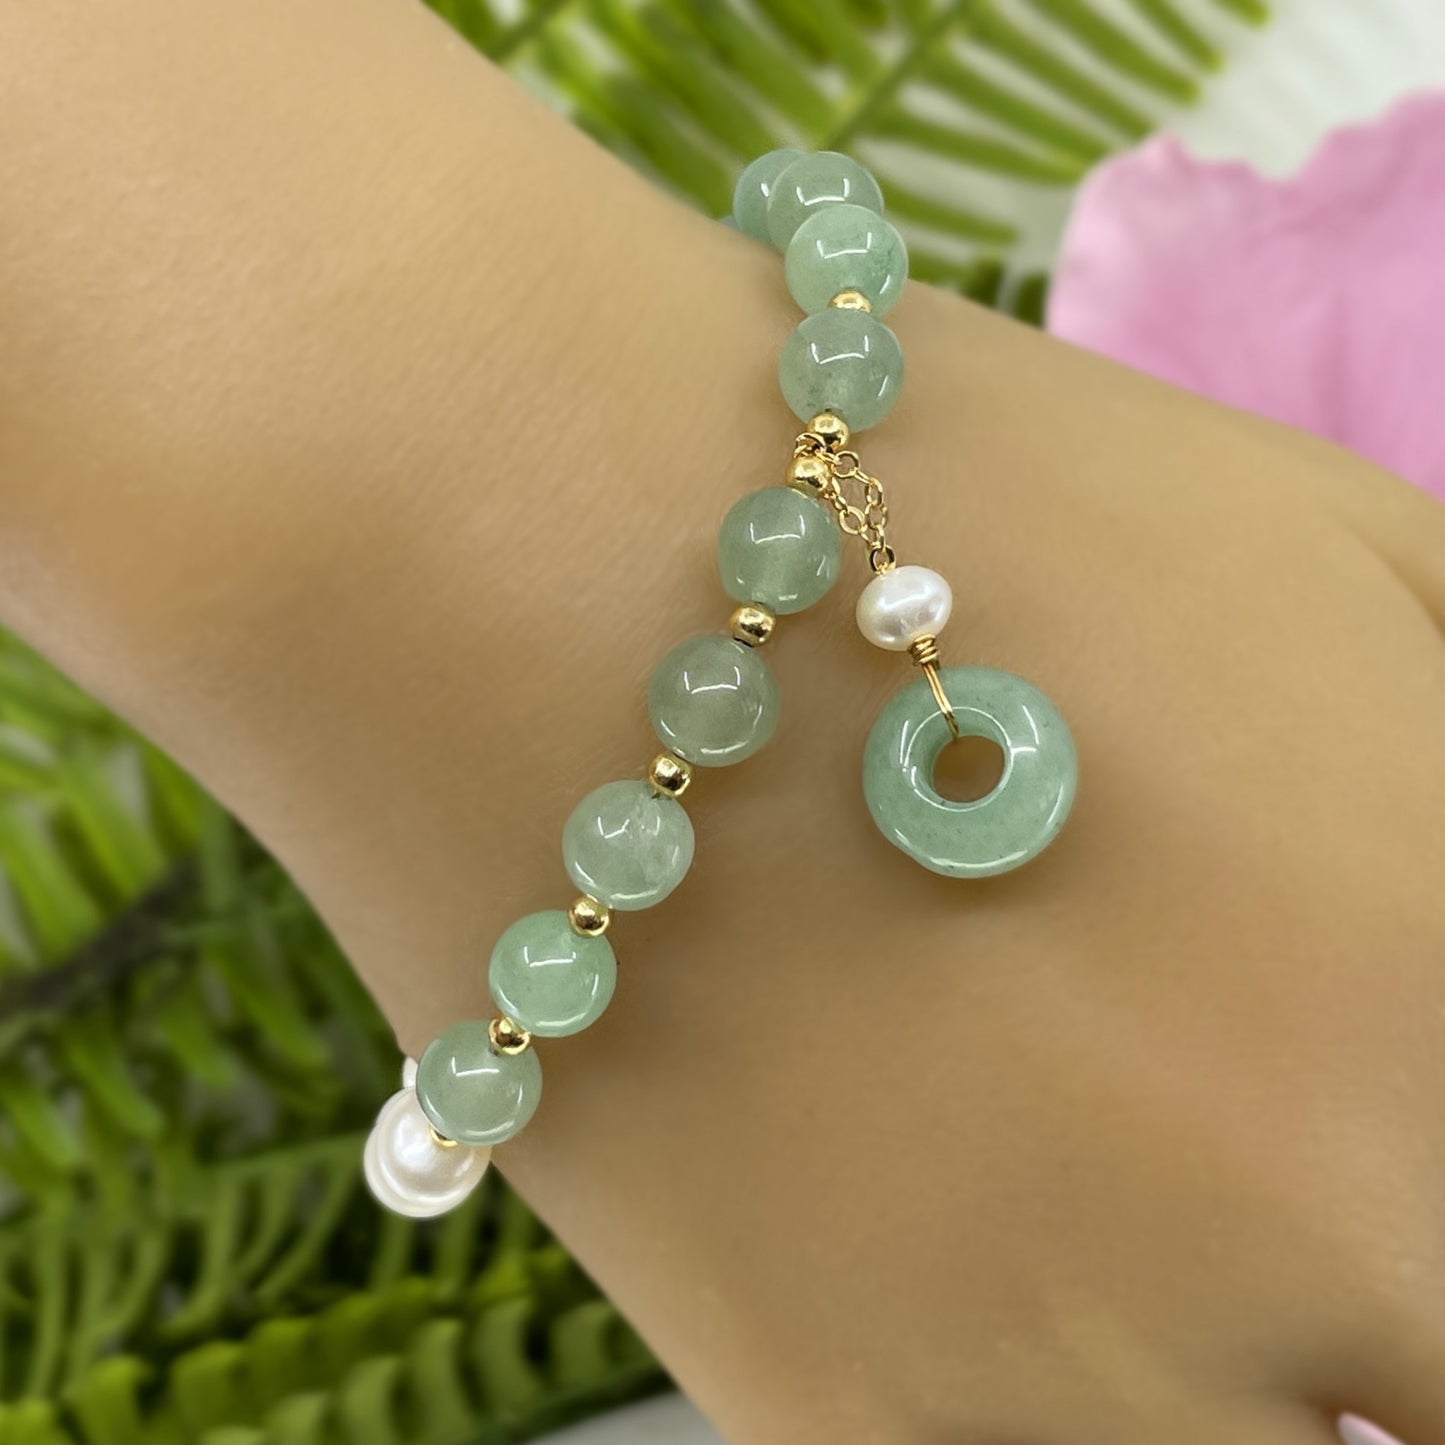 Eternity Jade Bracelet with freshwater pearls